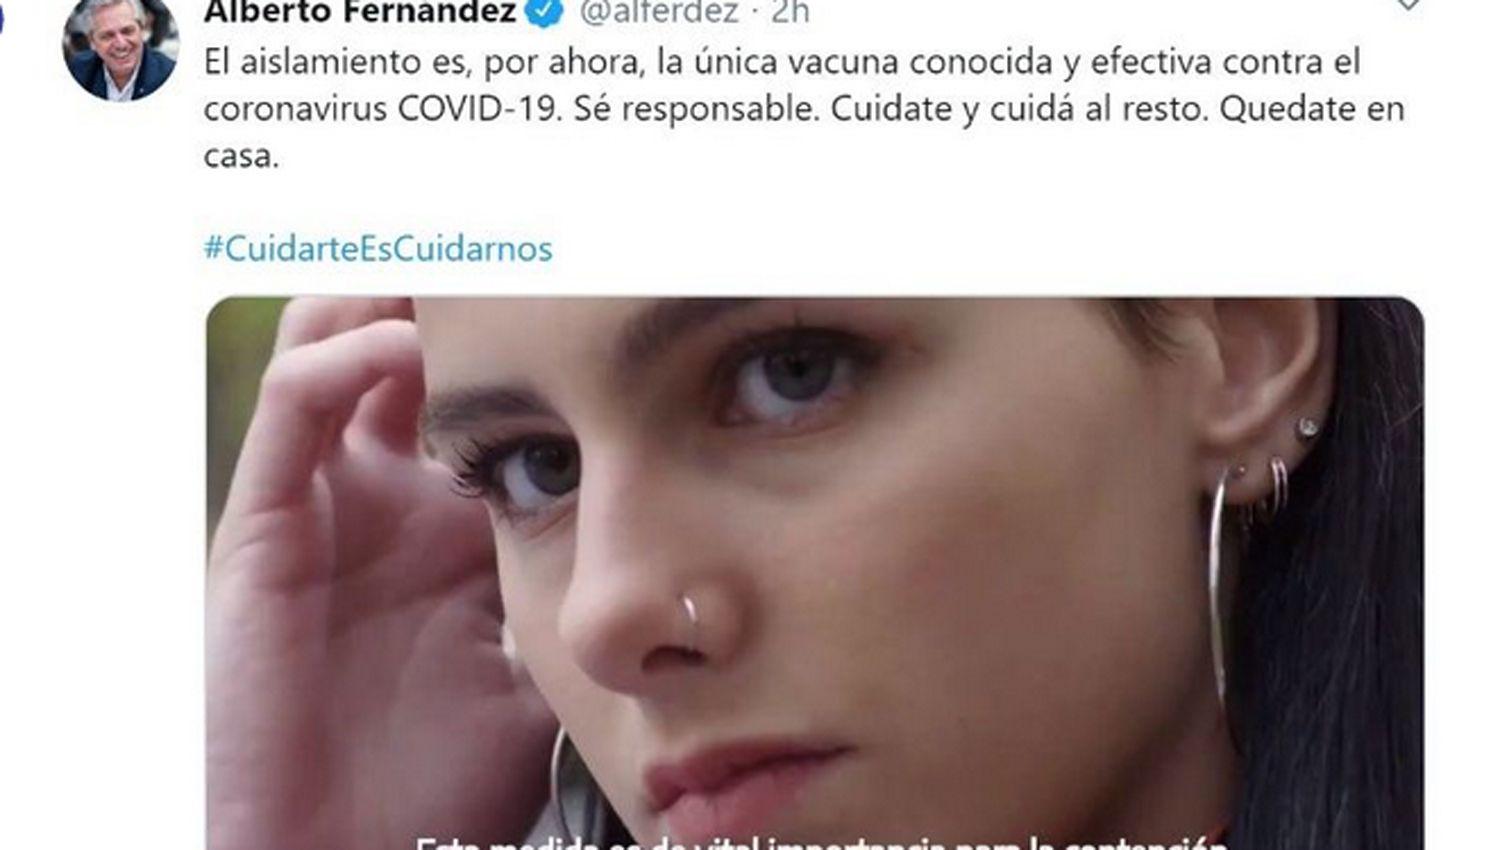 VIDEO  El pedido del presidente Alberto Fernaacutendez- Cuidate y cuidaacute al resto